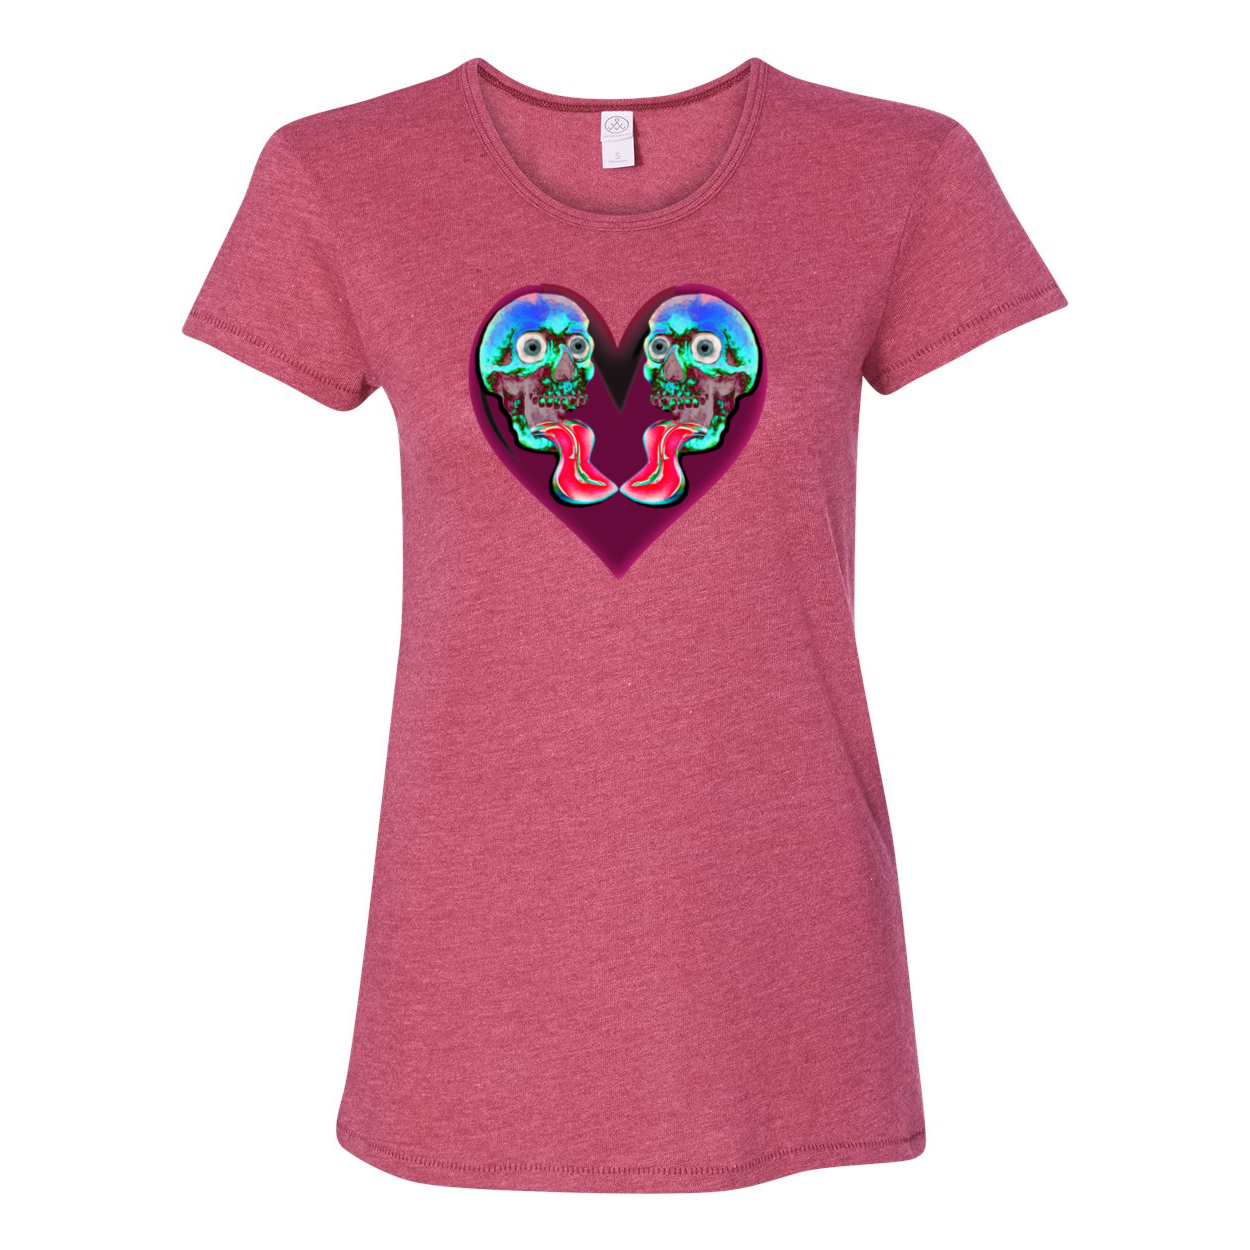 Heart and Skulls T-Shirt - Chloe Lambertin